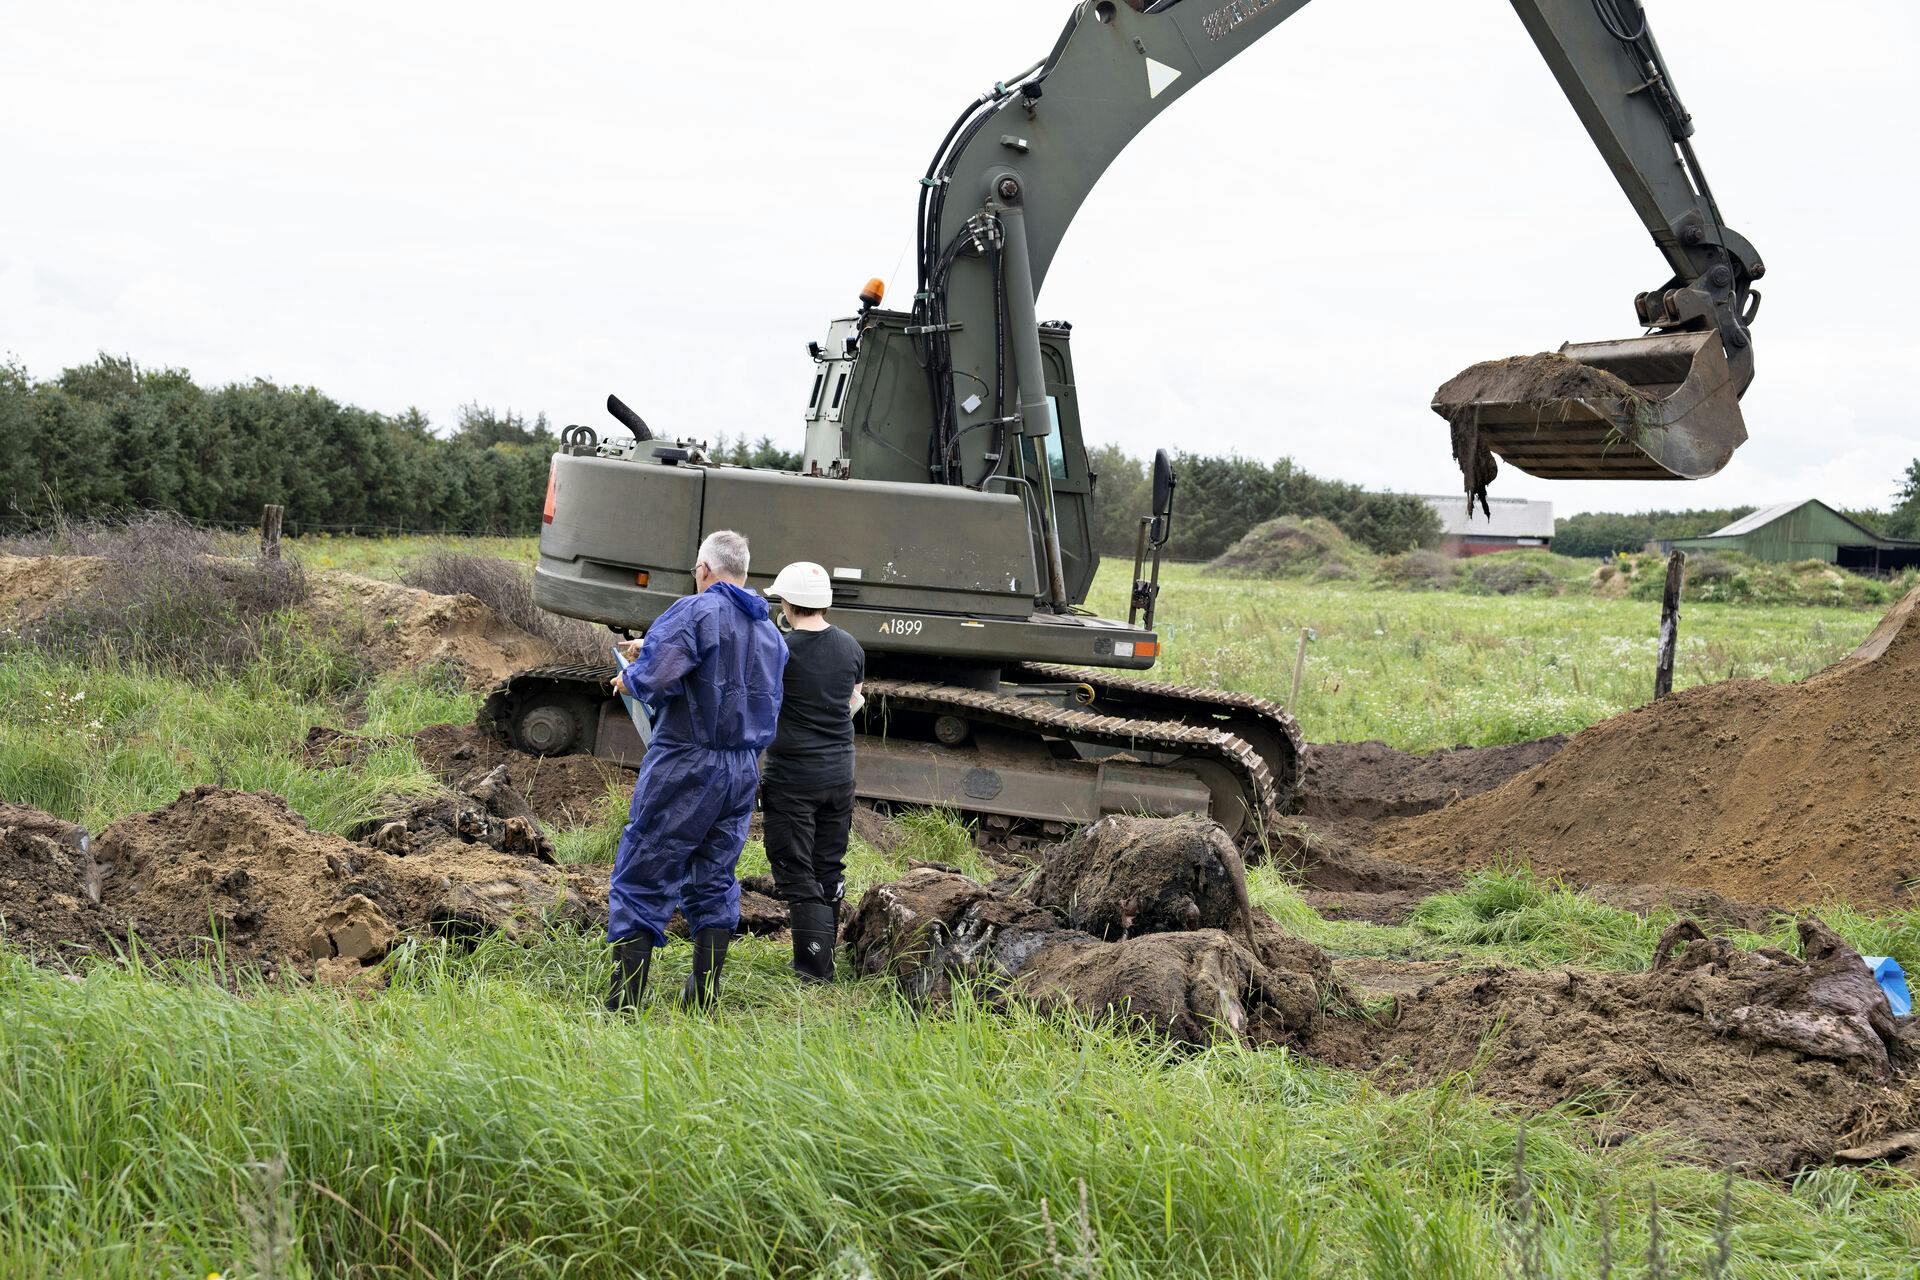 Der graves på markerne ved Stutteri Viegård i Skals, onsdag den 23. august 2023. Myndighederne leder efter nedgravede heste ved stutteriets ejendomme, skriver Ritzau. Det handler først og fremmest om at finde ud af, om der er nedgravet heste uden tilla